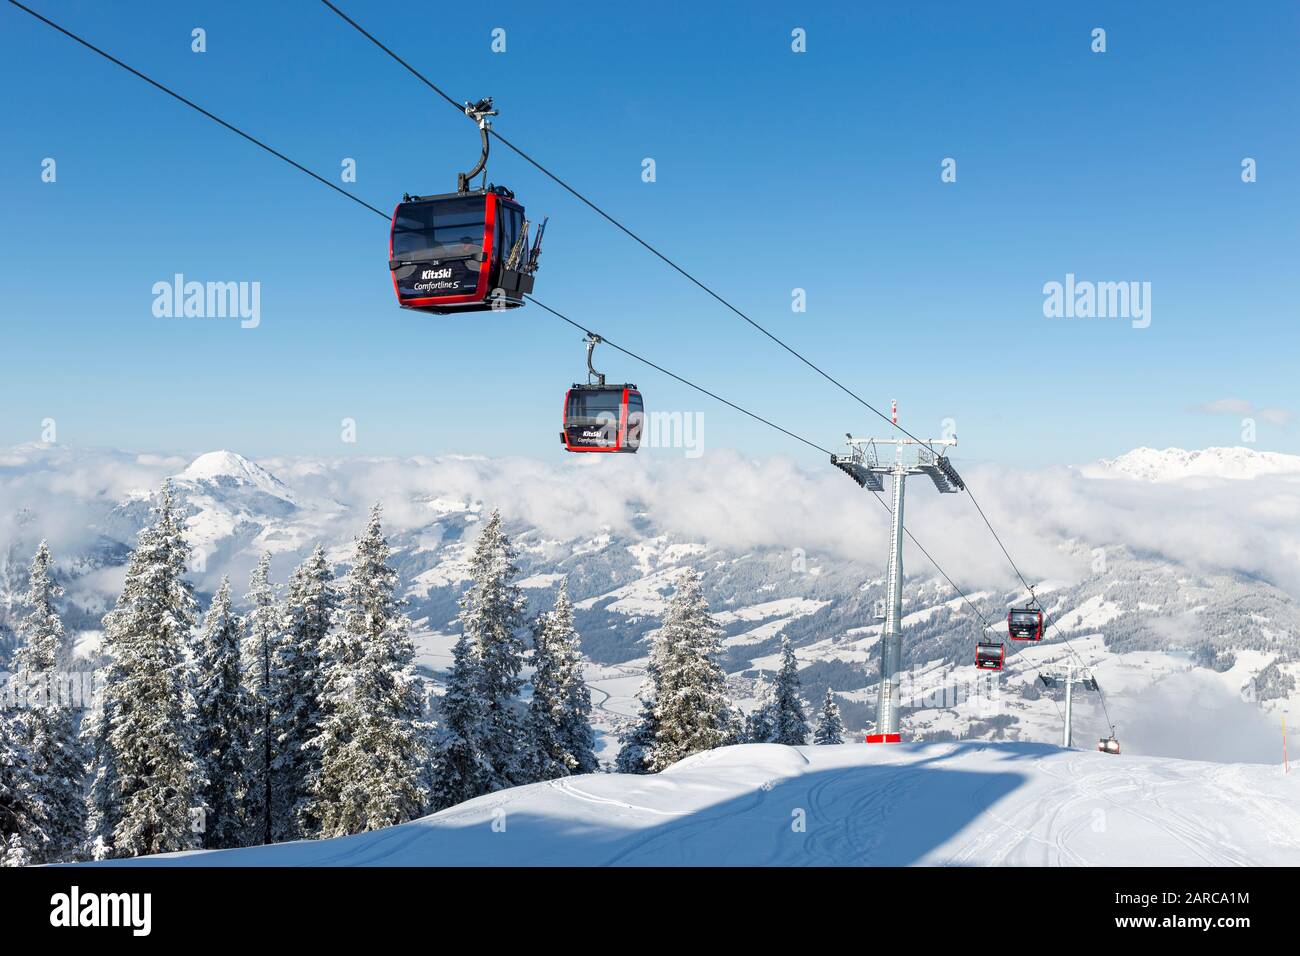 Kitzbuhel, AUSTRIA - 20 DE ENERO de 2020 : góndola de esquí Fleckalmbahn un teleférico mejorado abrió sus puertas en diciembre de 2019 para transportar a los visitantes al Kitzski ar Foto de stock